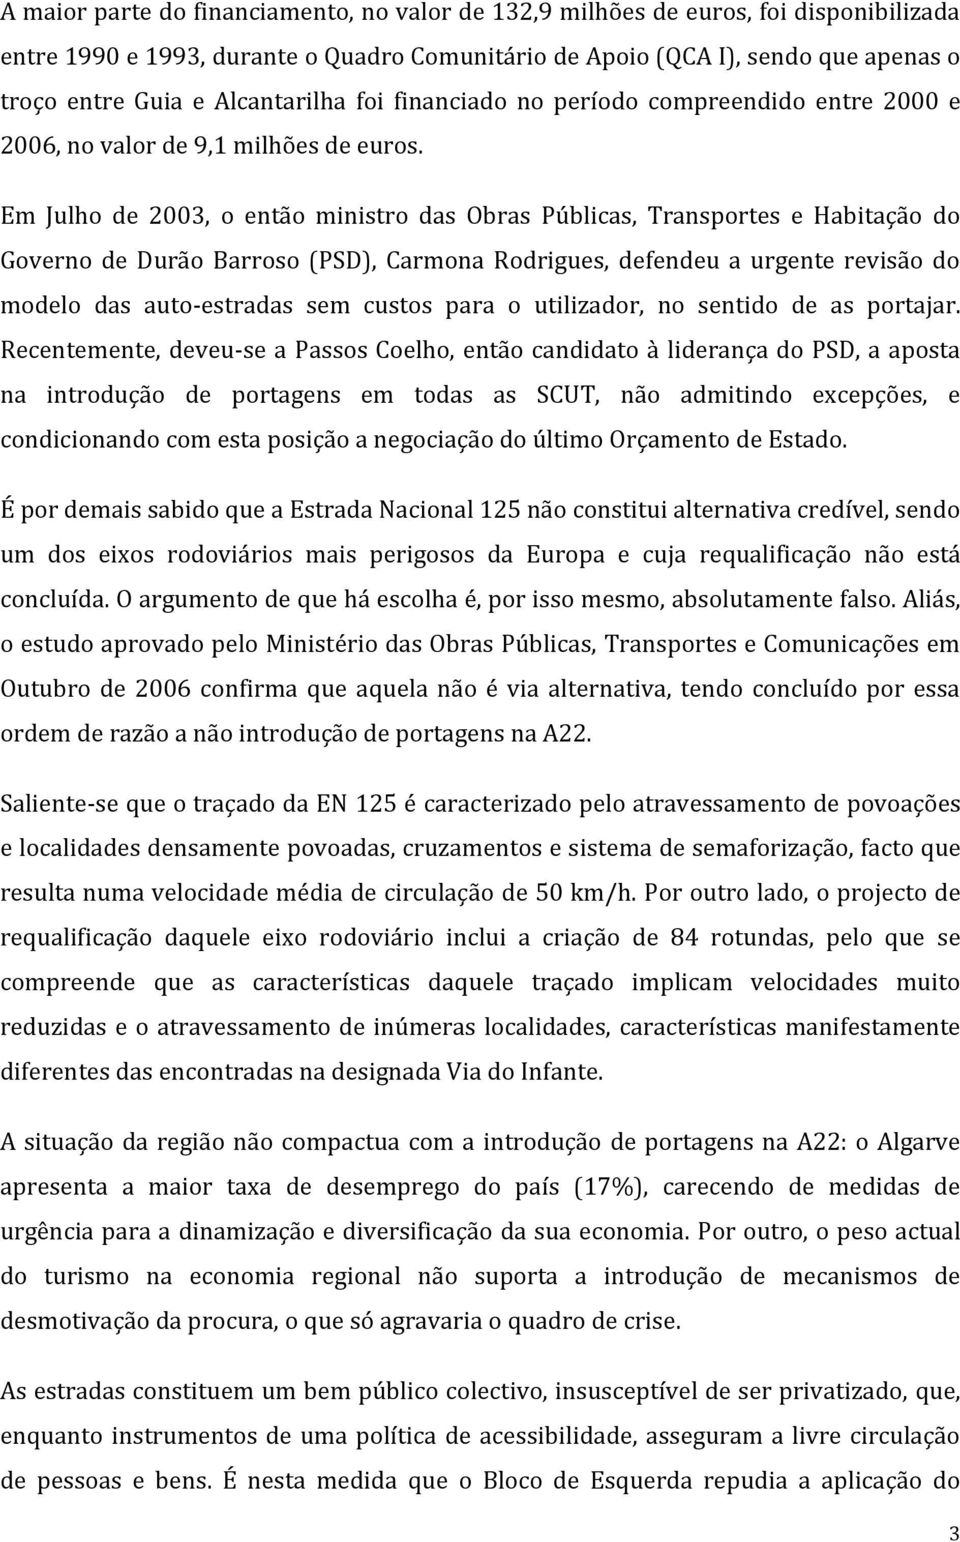 Em Julho de 2003, o então ministro das Obras Públicas, Transportes e Habitação do Governo de Durão Barroso (PSD), Carmona Rodrigues, defendeu a urgente revisão do modelo das auto-estradas sem custos